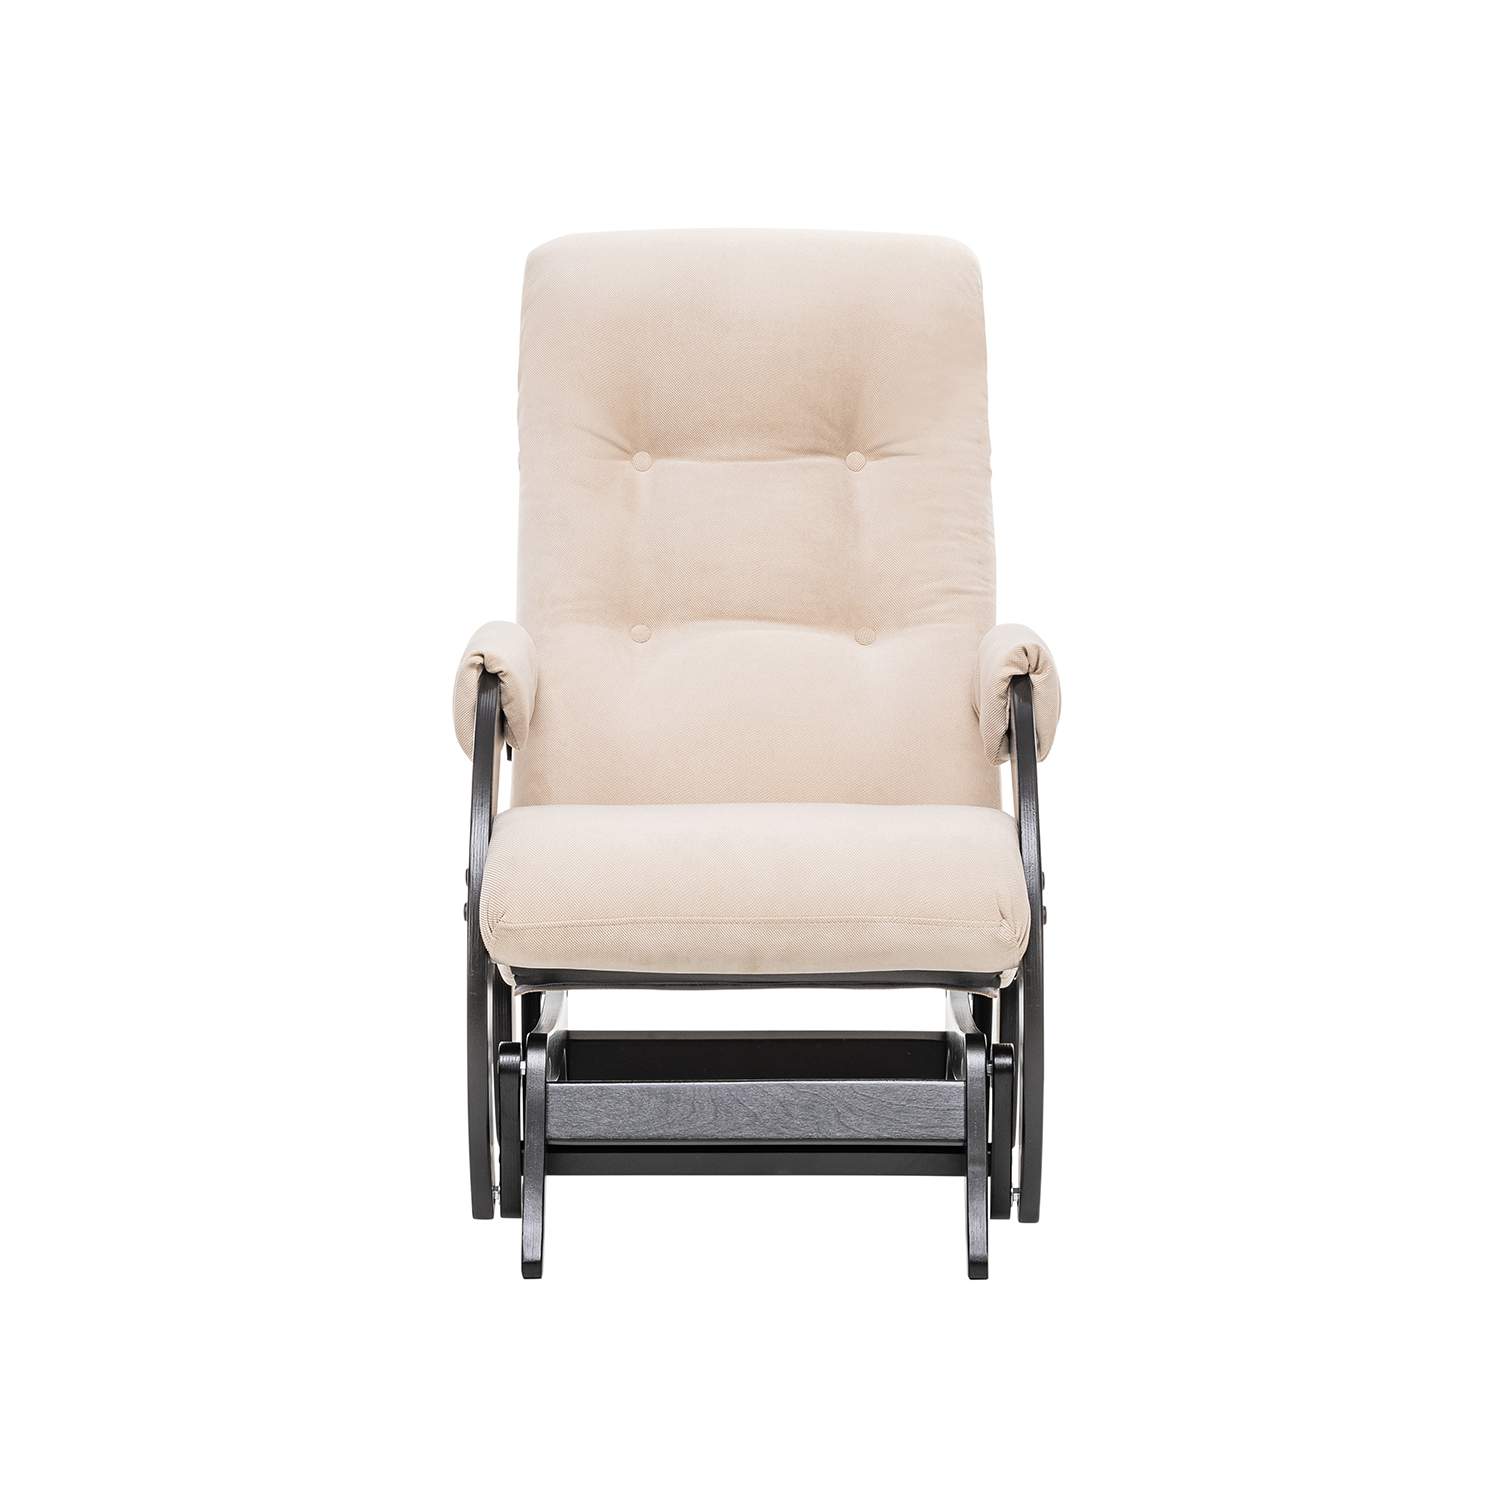 Кресло-глайдер Модель 68, венге, ткань Verona Vanilla